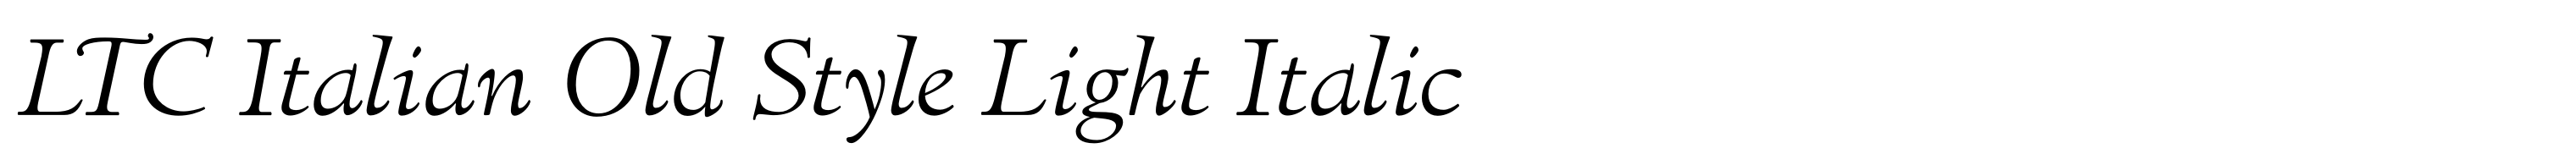 LTC Italian Old Style Light Italic